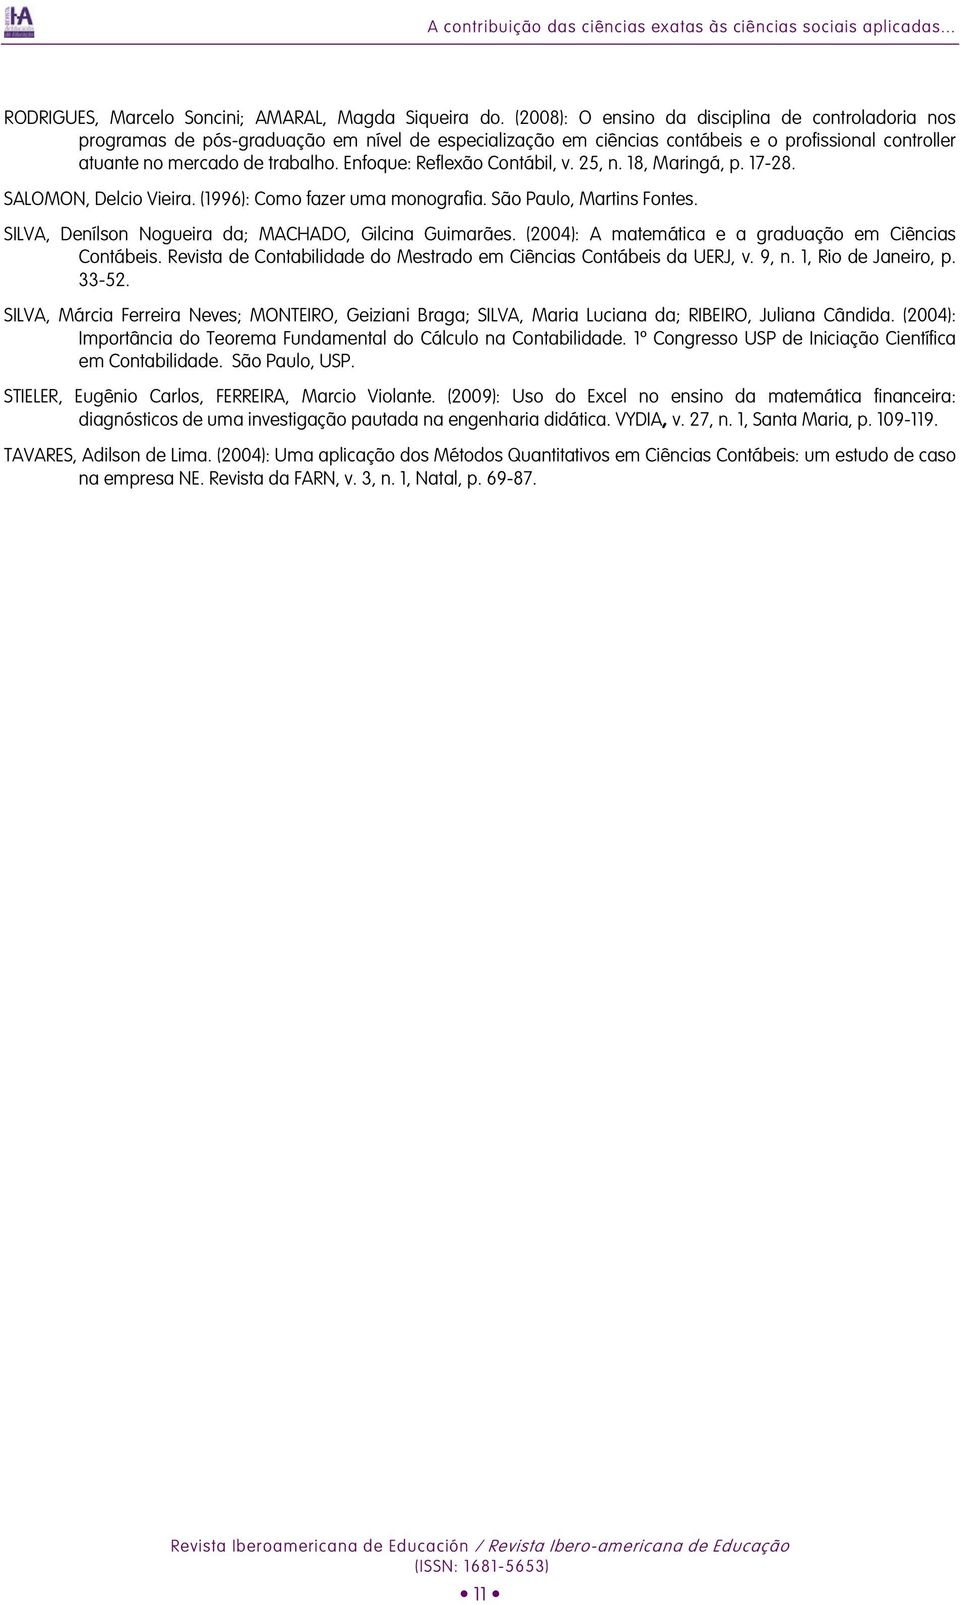 Enfoque: Reflexão Contábil, v. 25, n. 18, Maringá, p. 17-28. SALOMON, Delcio Vieira. (1996): Como fazer uma monografia. São Paulo, Martins Fontes.